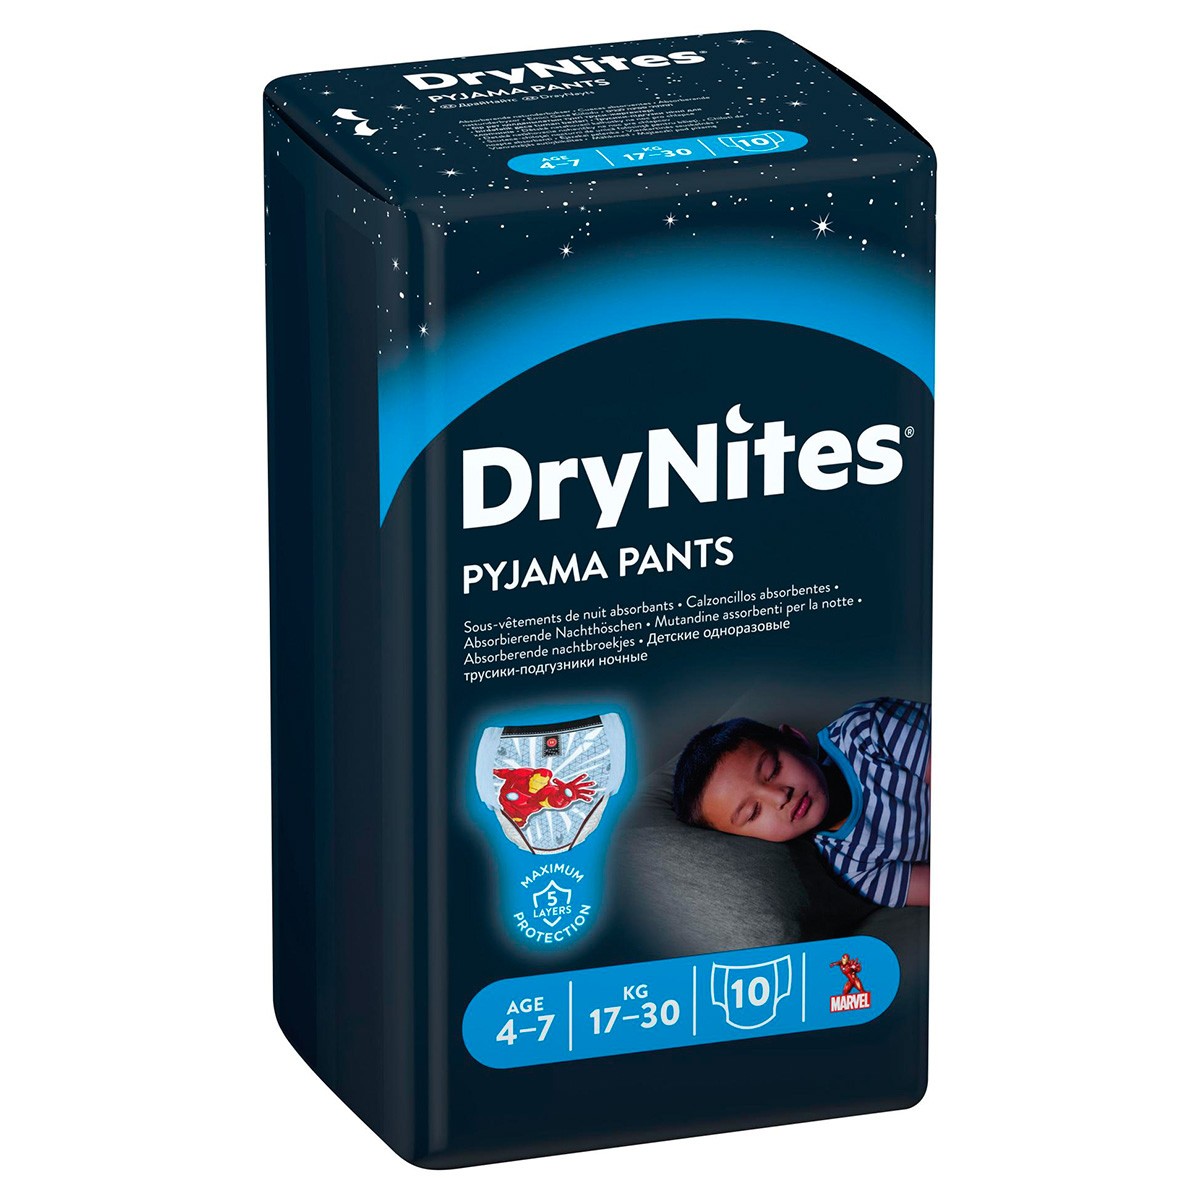 Drynites Pyjama Pants Calzoncillos Absorbentes 4-7 Años 10 Unidades